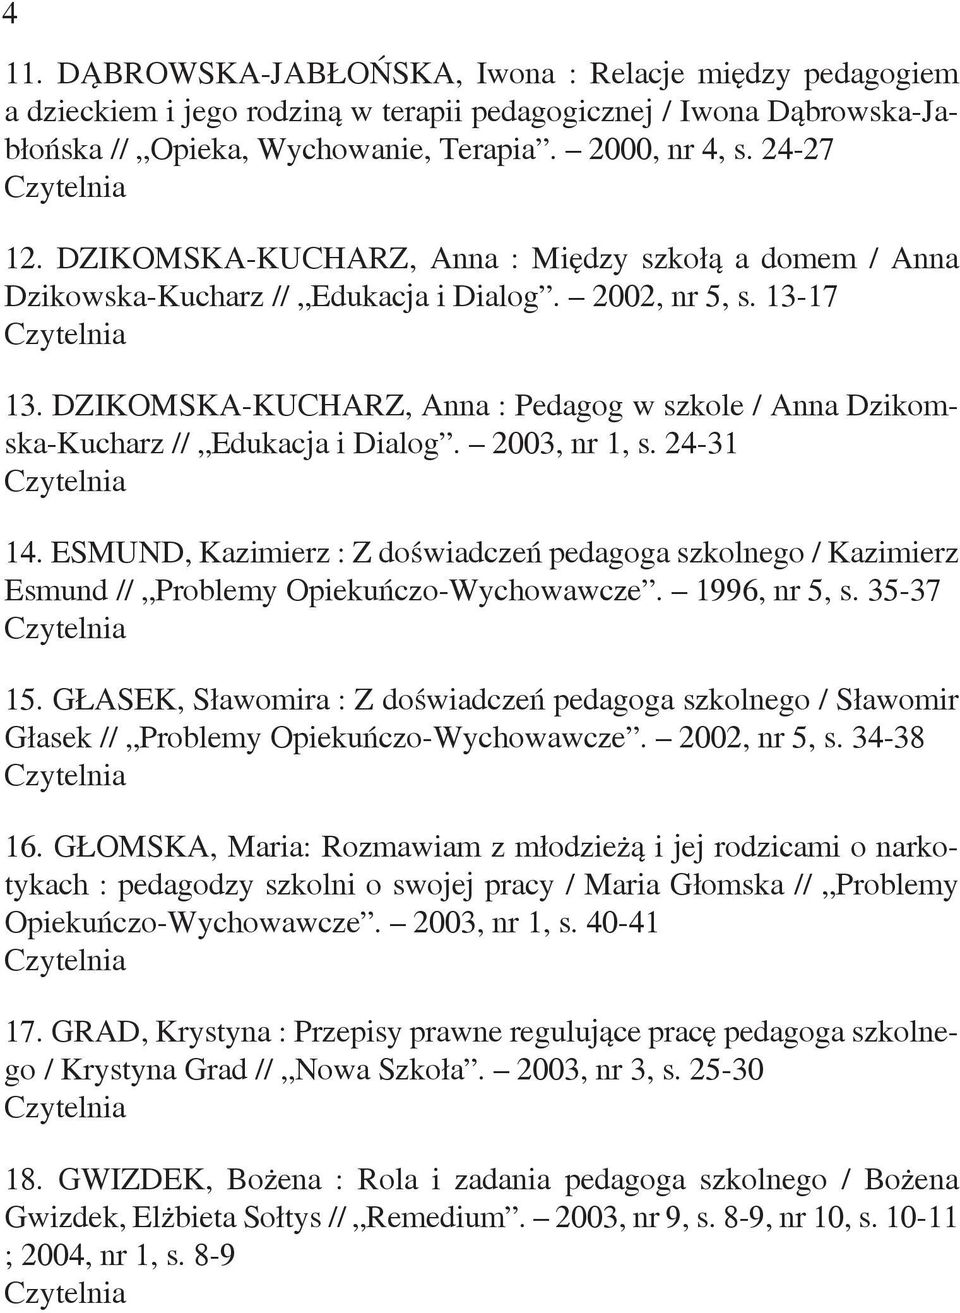 DZIKOMSKA-KUCHARZ, Anna : Pedagog w szkole / Anna Dzikomska-Kucharz // Edukacja i Dialog. 2003, nr 1, s. 24-31 14.